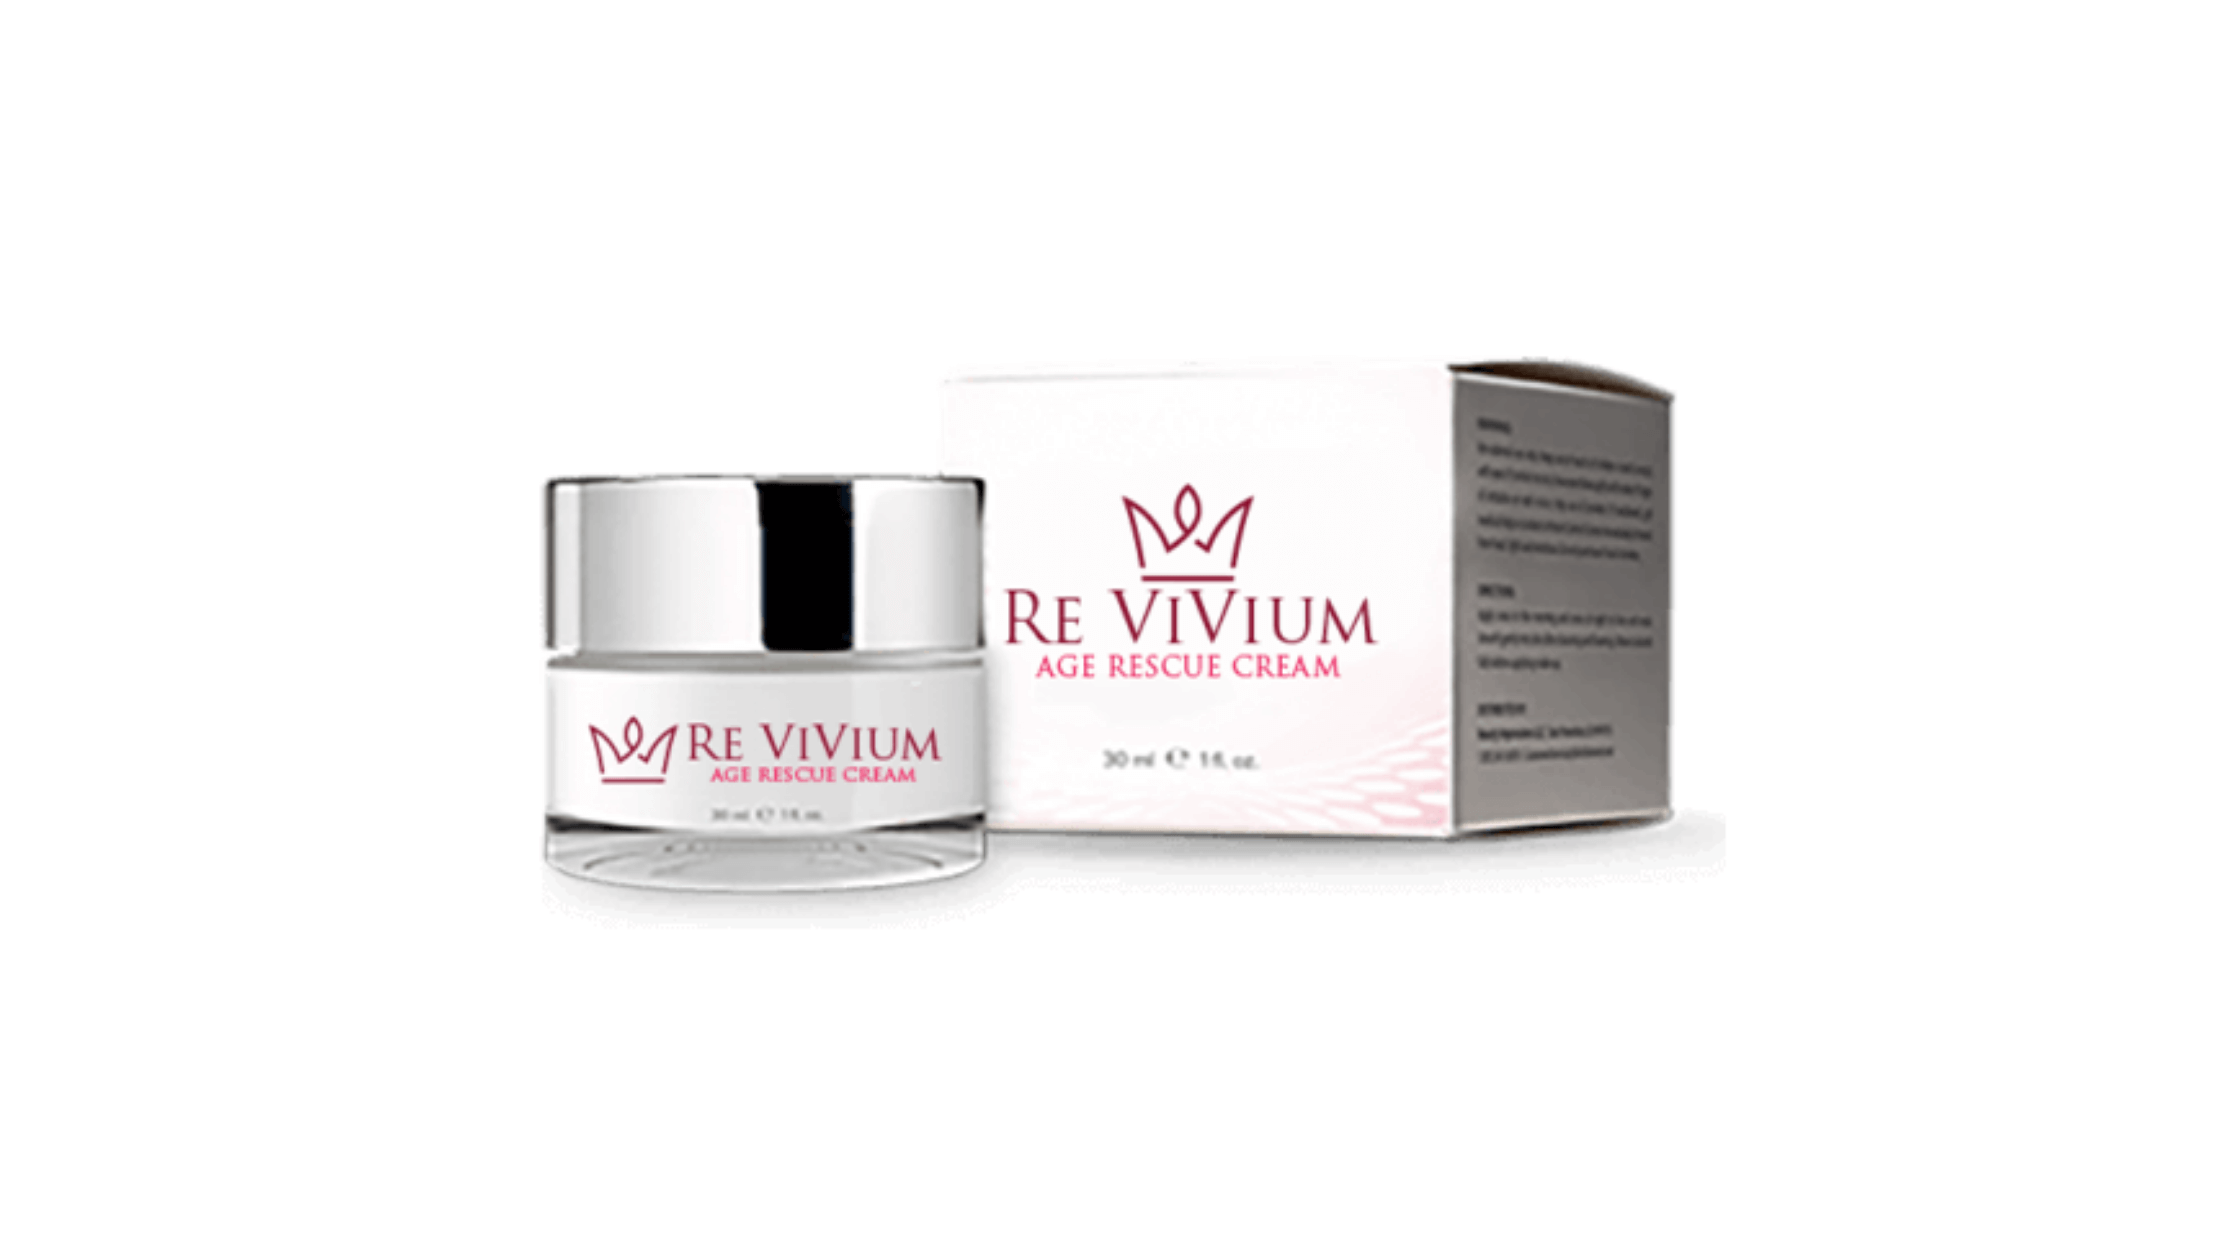 Re ViVium Cream Reviews